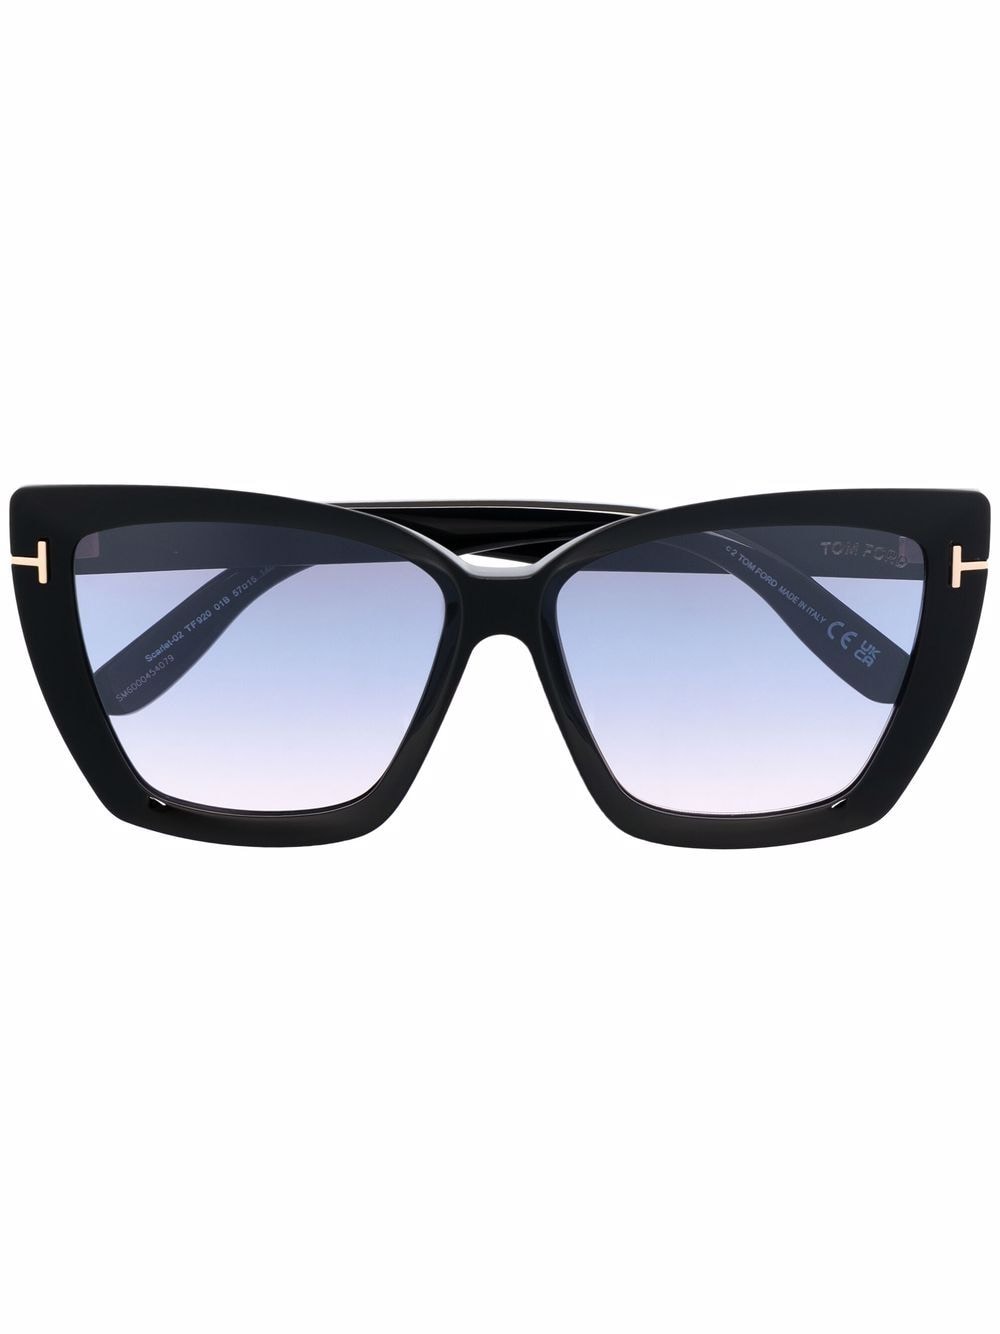 TOM FORD Eyewear Scarlett cat-eye sunglasses - Black von TOM FORD Eyewear